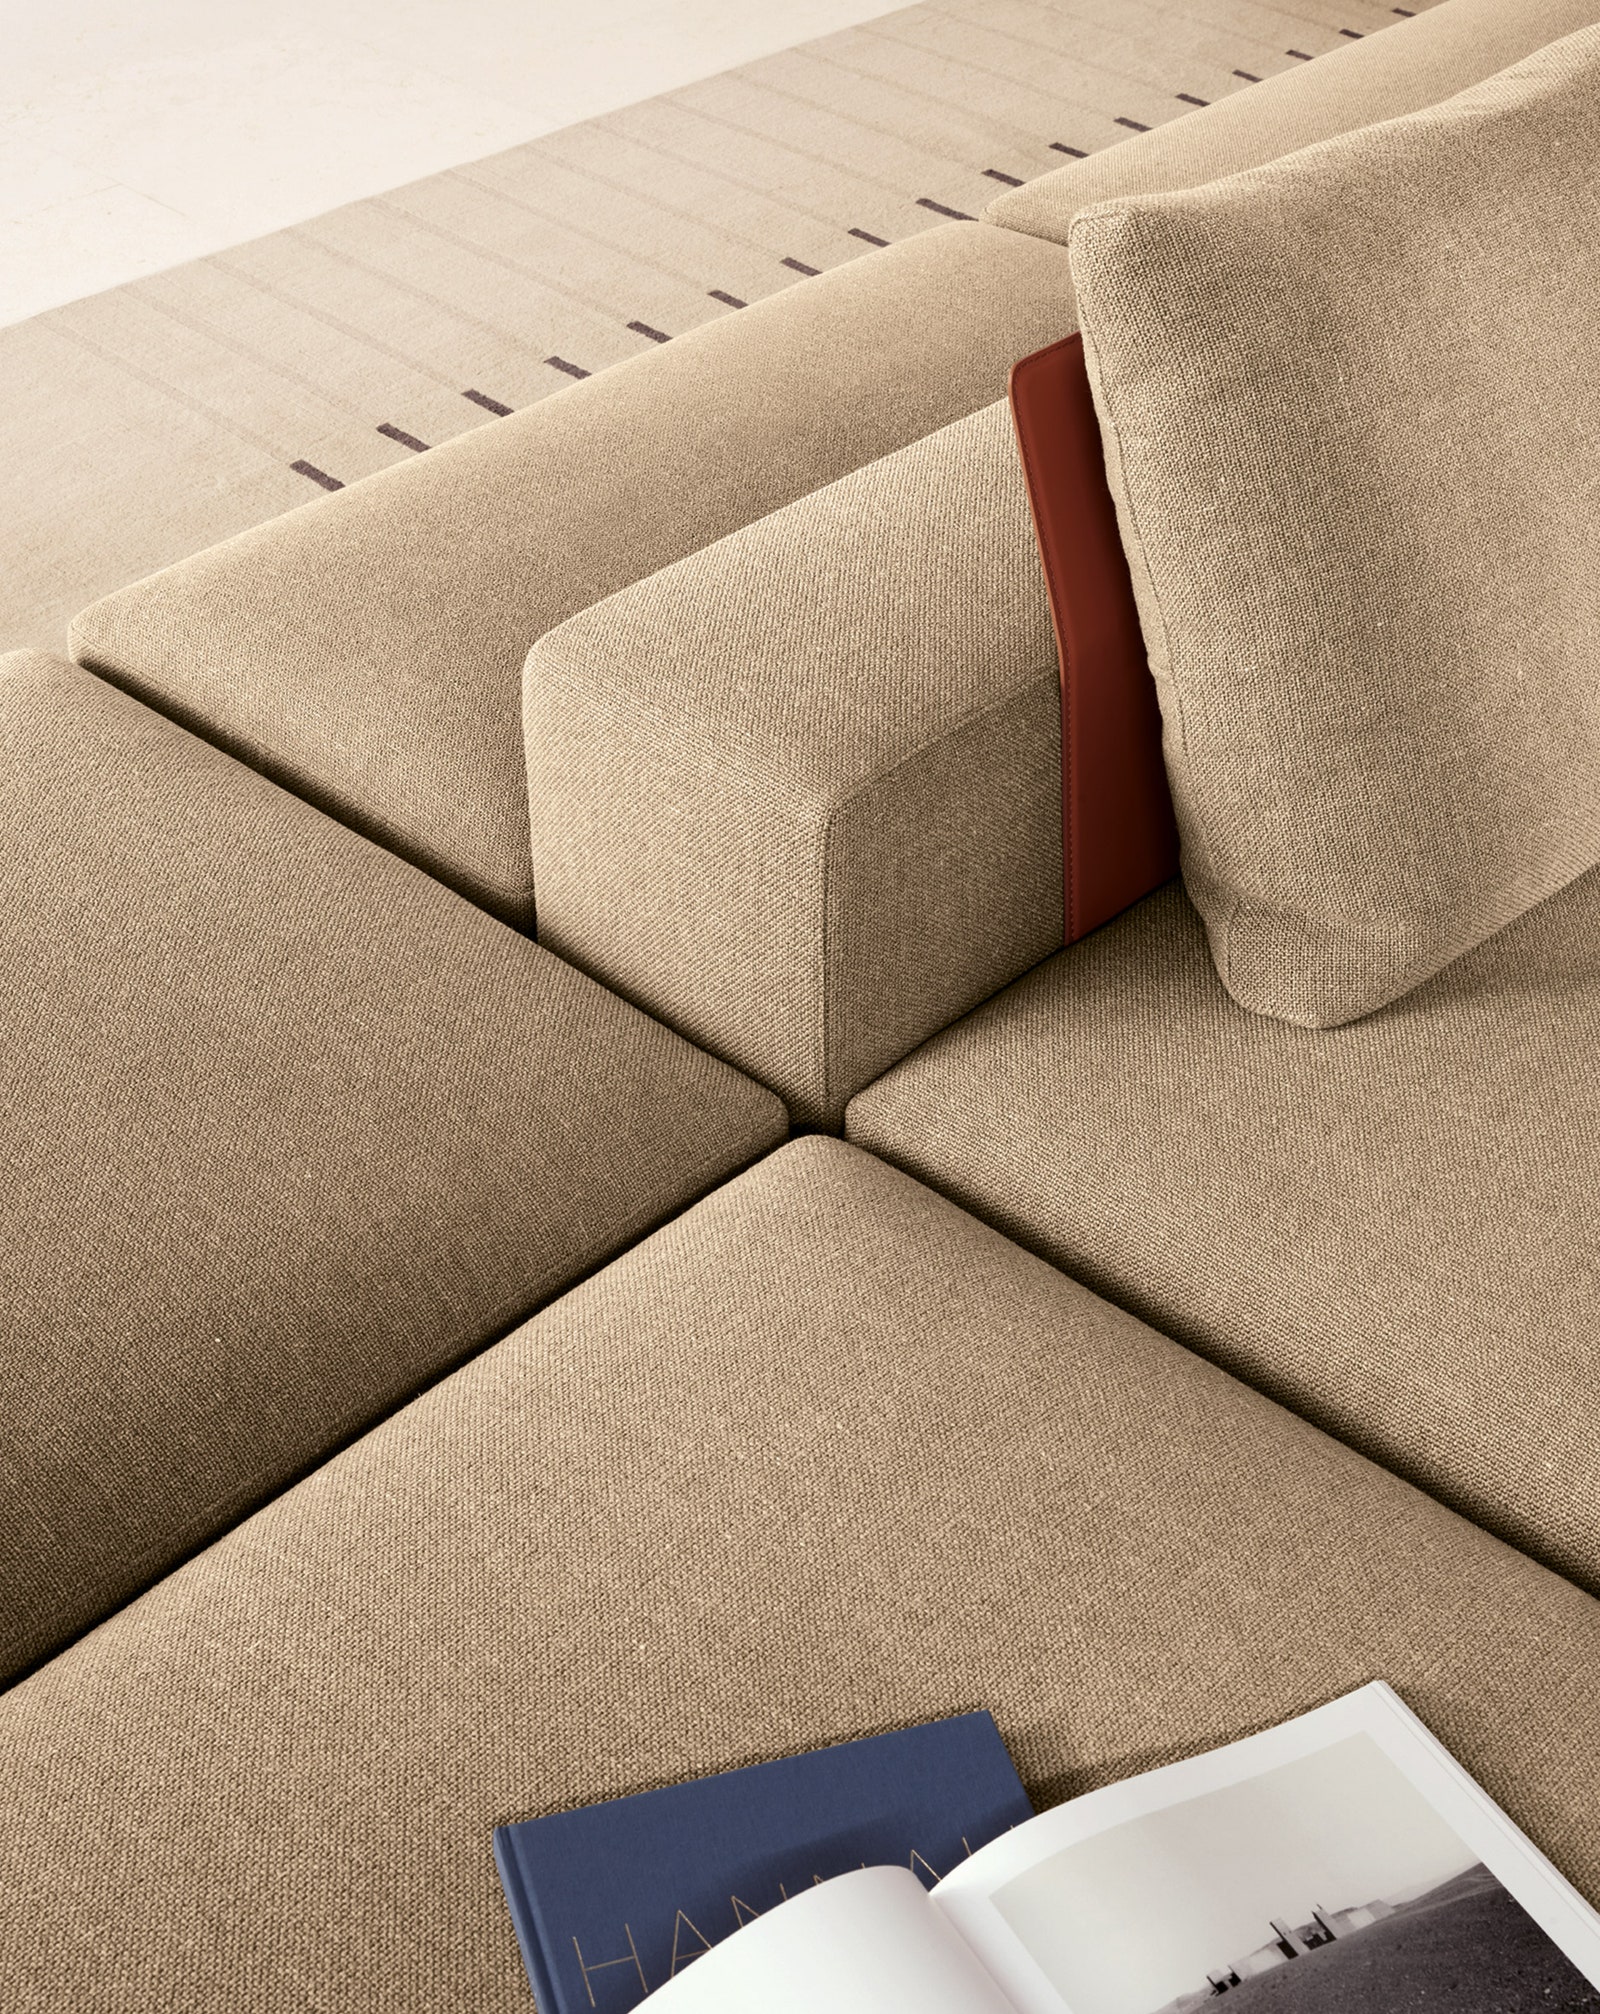 Как оформить 4 веские причины использовать модульный диван в интерьере